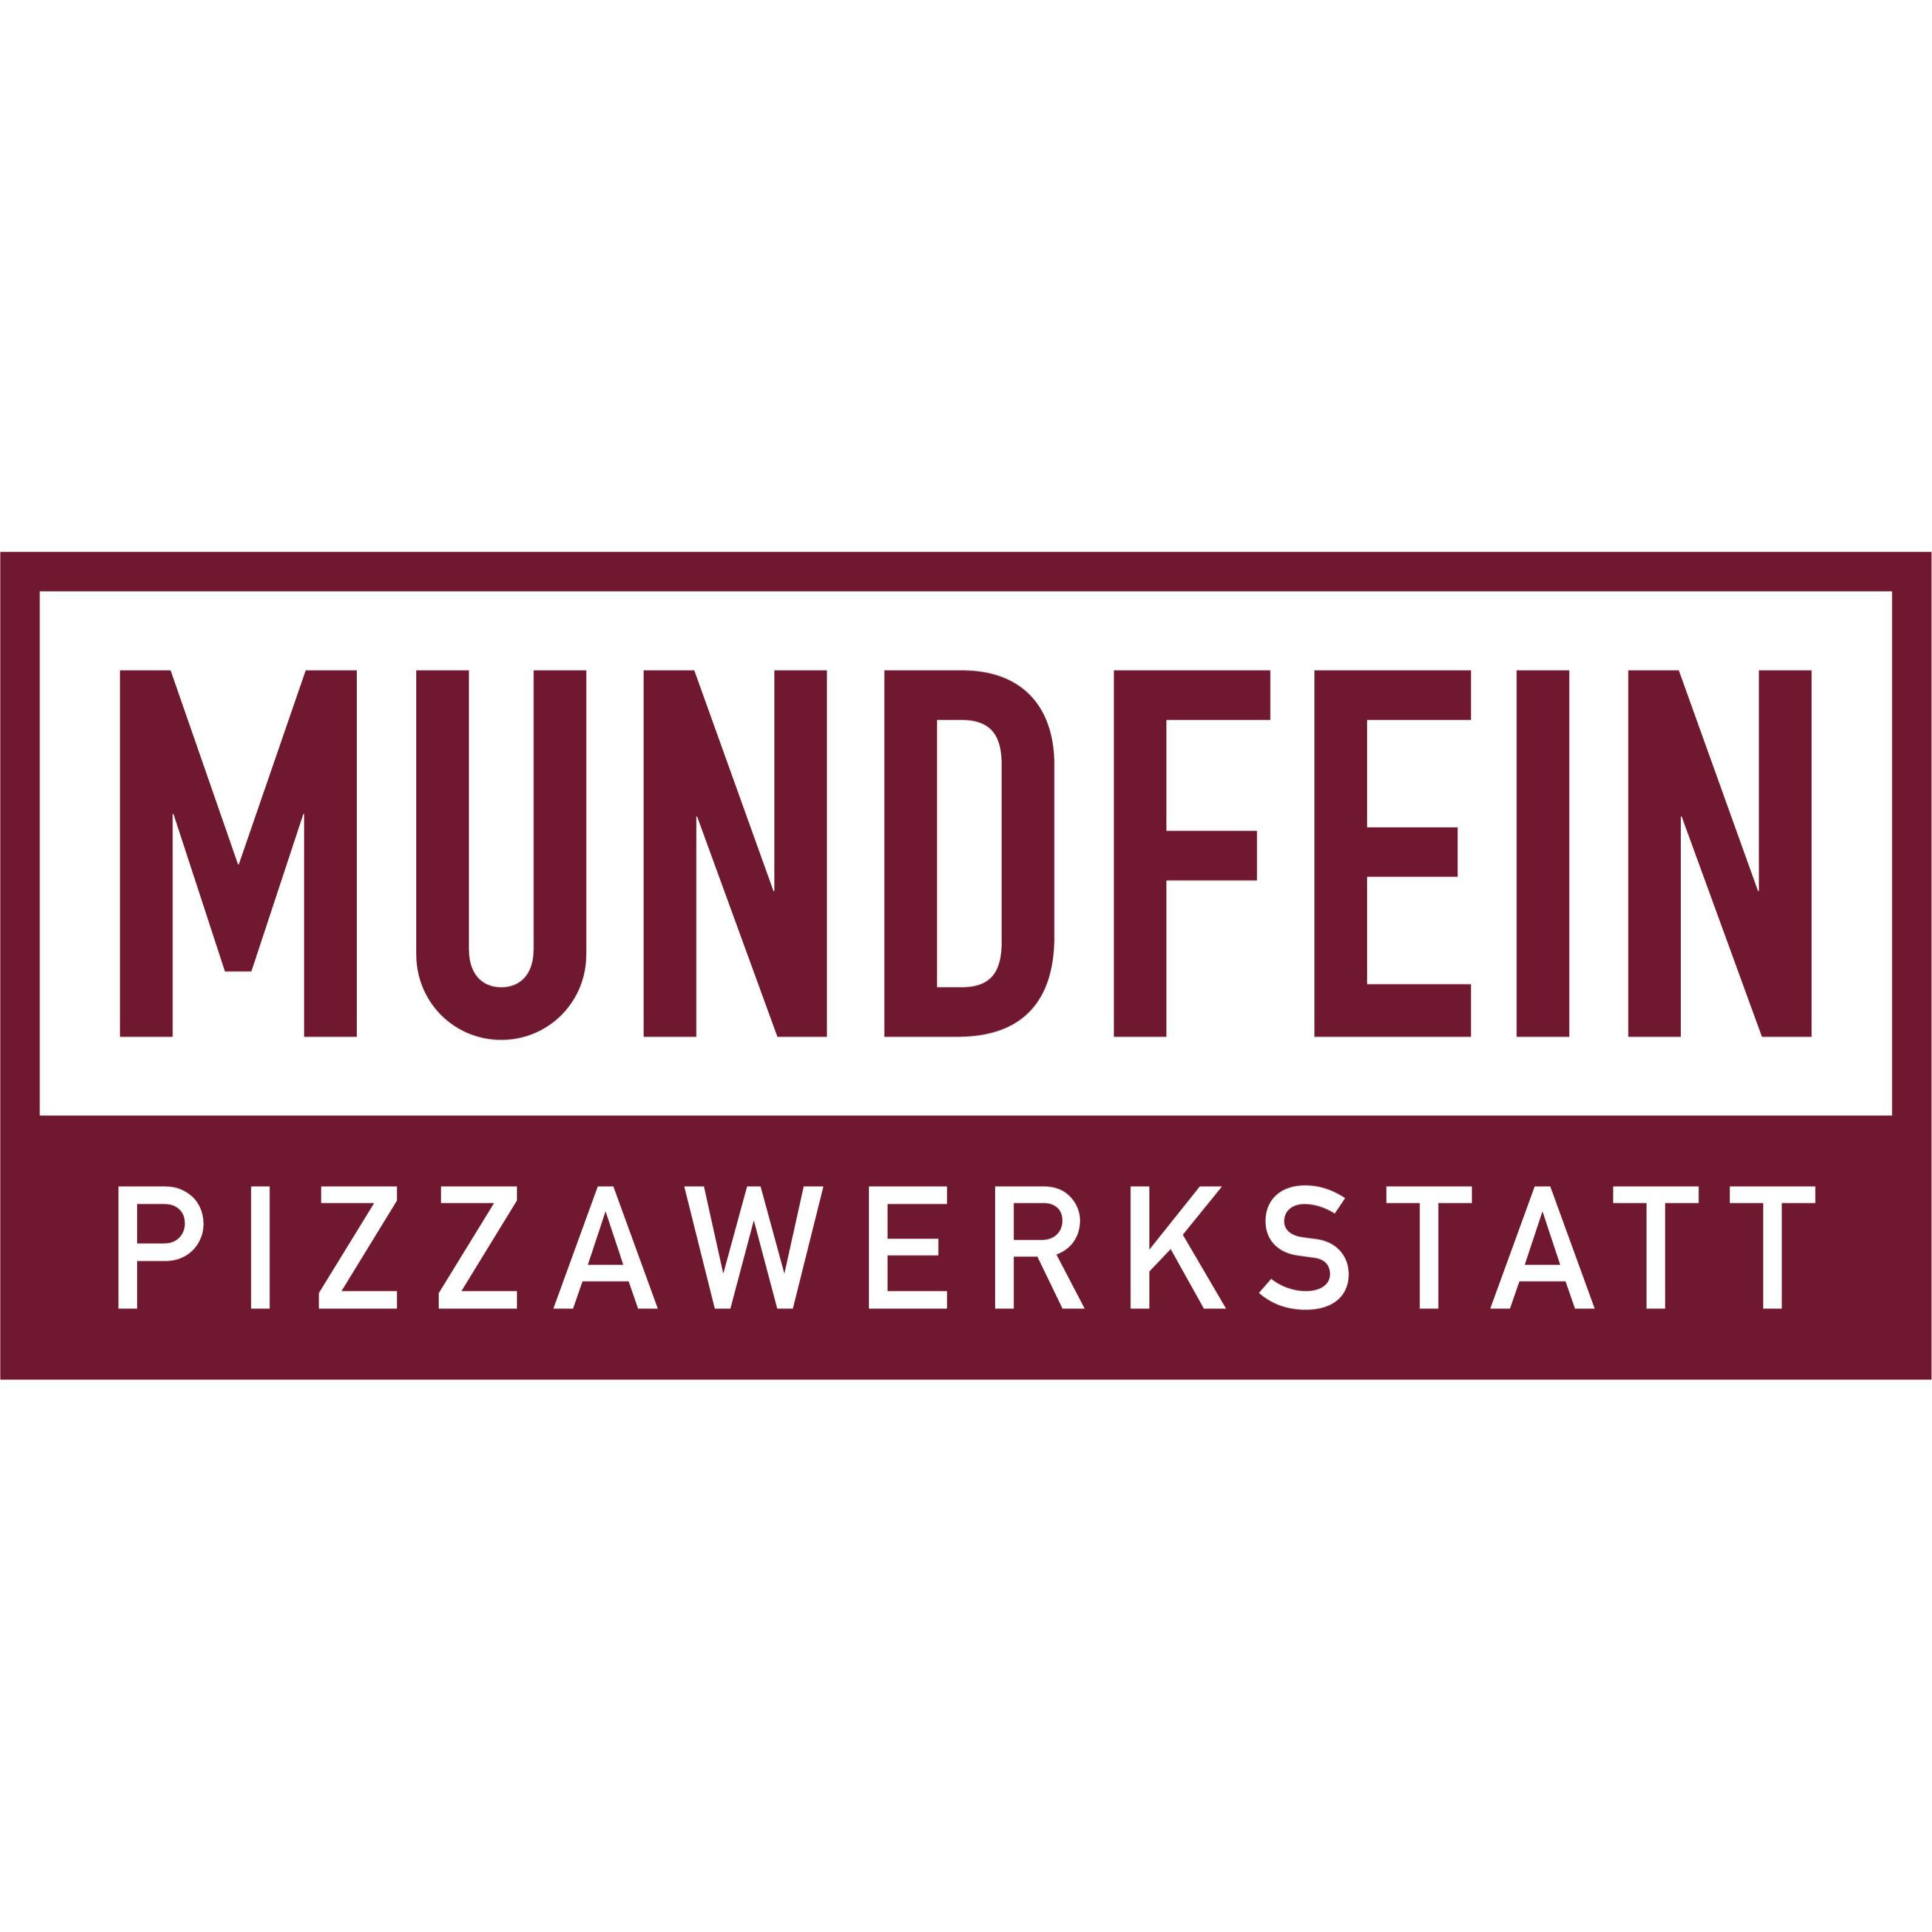 MUNDFEIN Pizzawerkstatt Ahrensburg in Ahrensburg - Logo